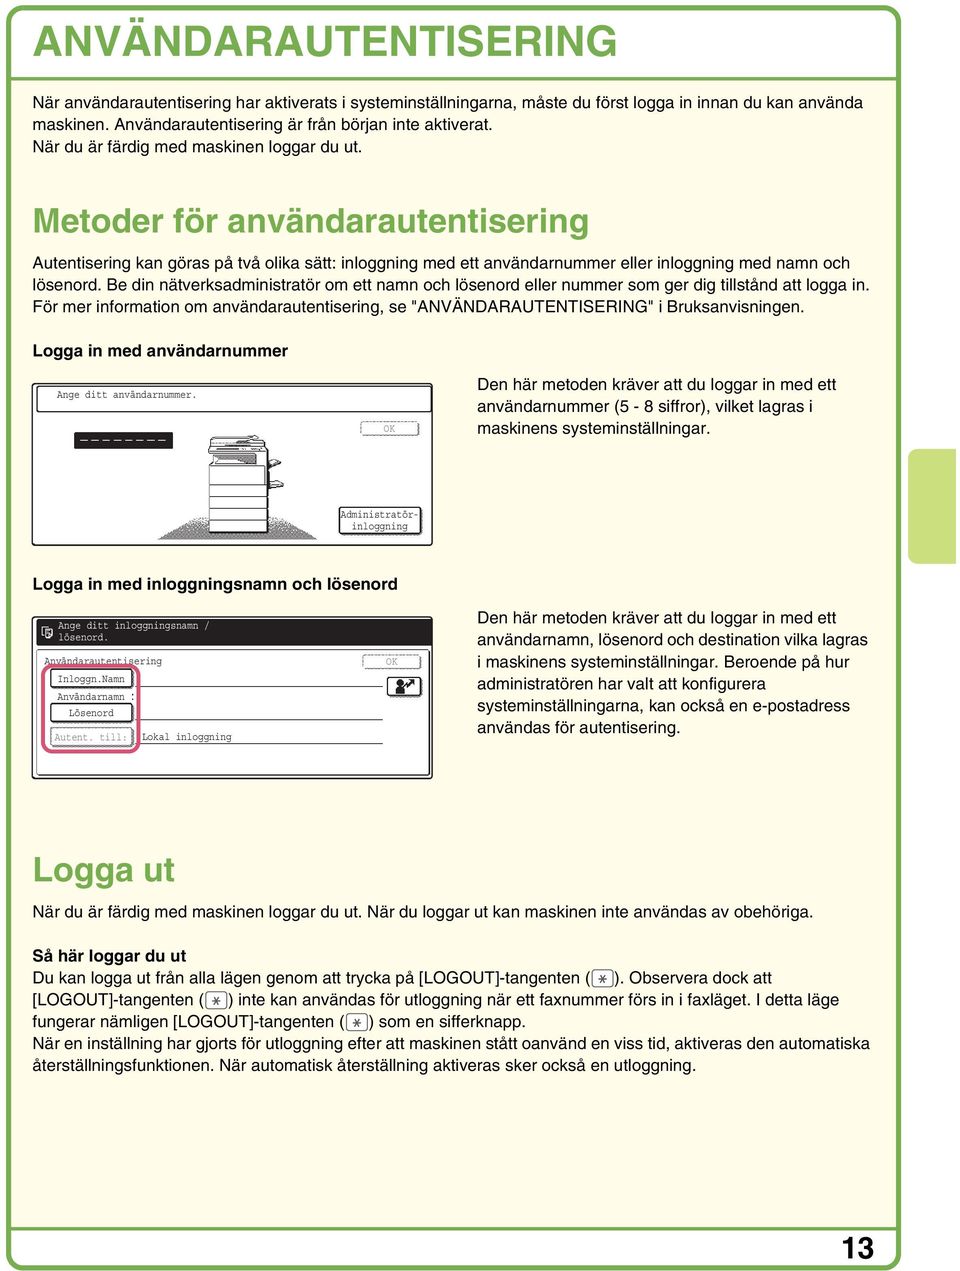 Be din nätverksadministratör om ett namn och lösenord eller nummer som ger dig tillstånd att logga in. För mer information om användarautentisering, se "ANVÄNDARAUTENTISERING" i Bruksanvisningen.